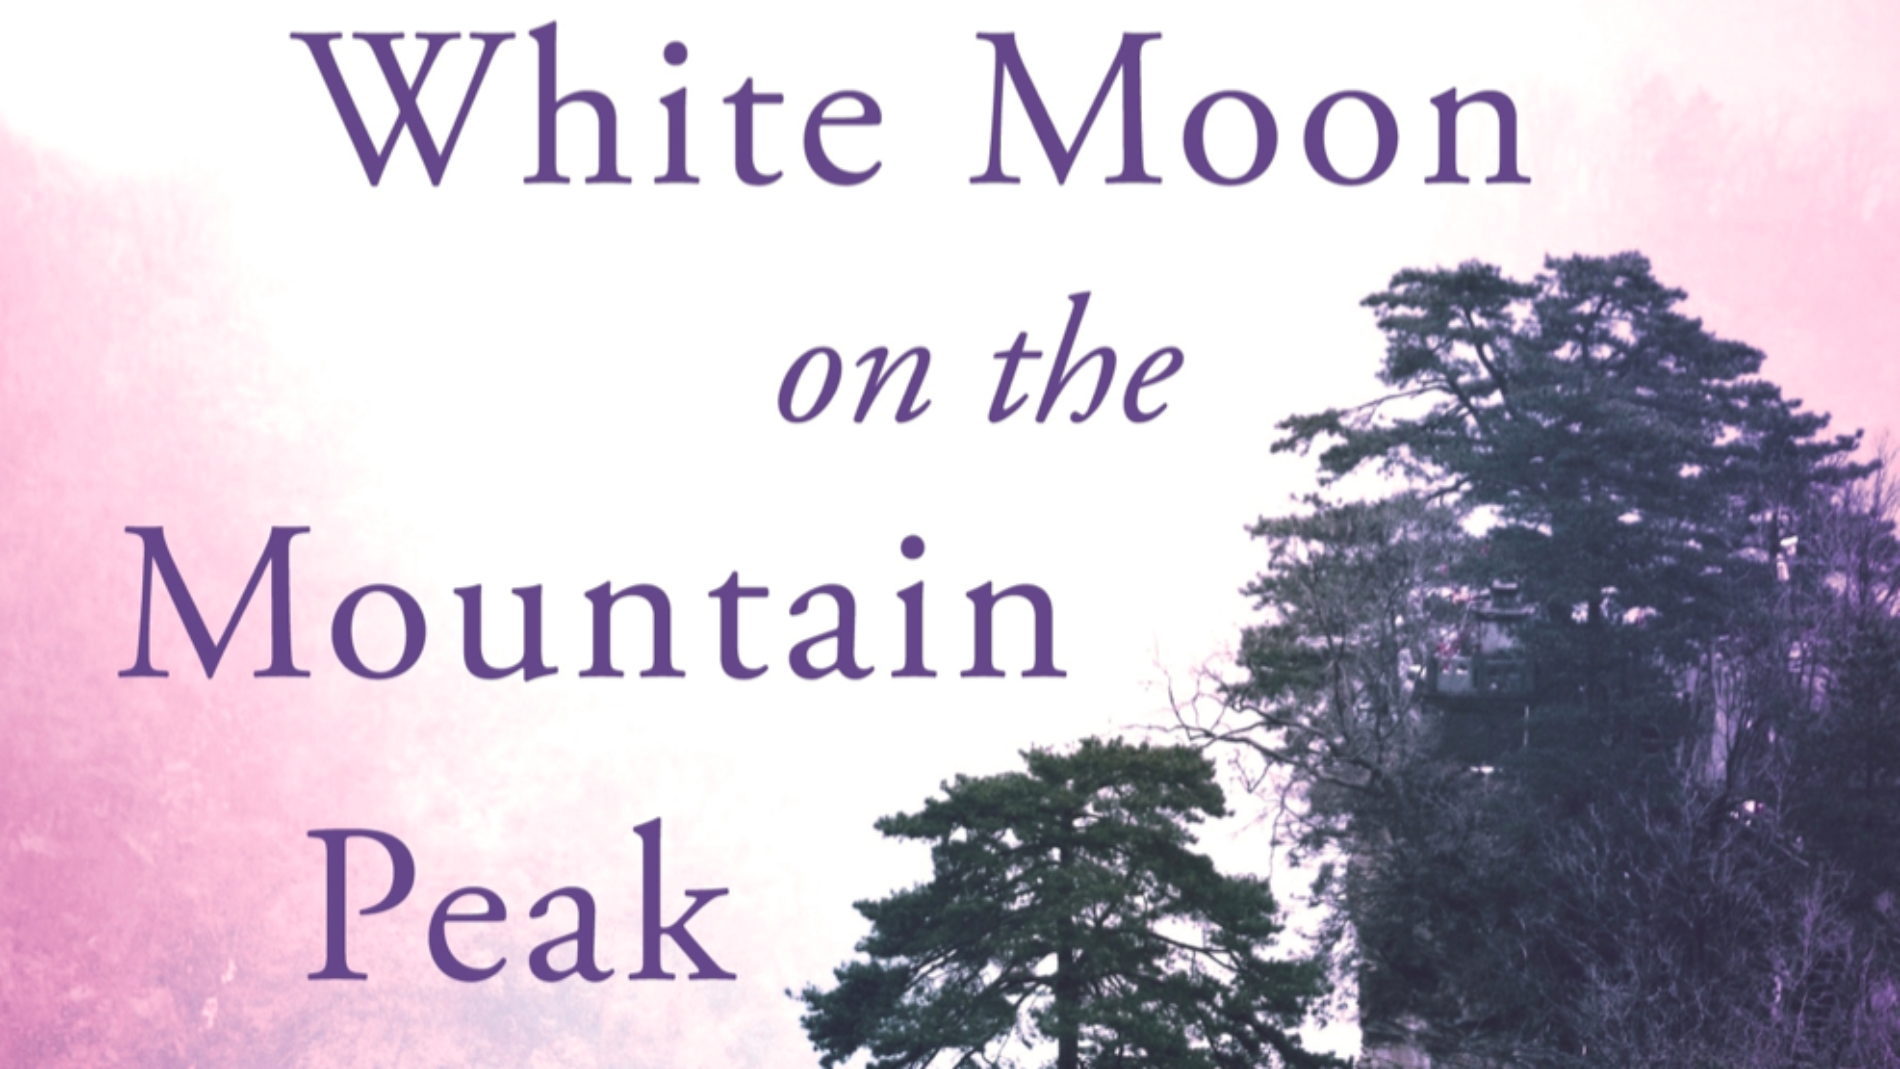 White Moon on the Mountain Peak 2